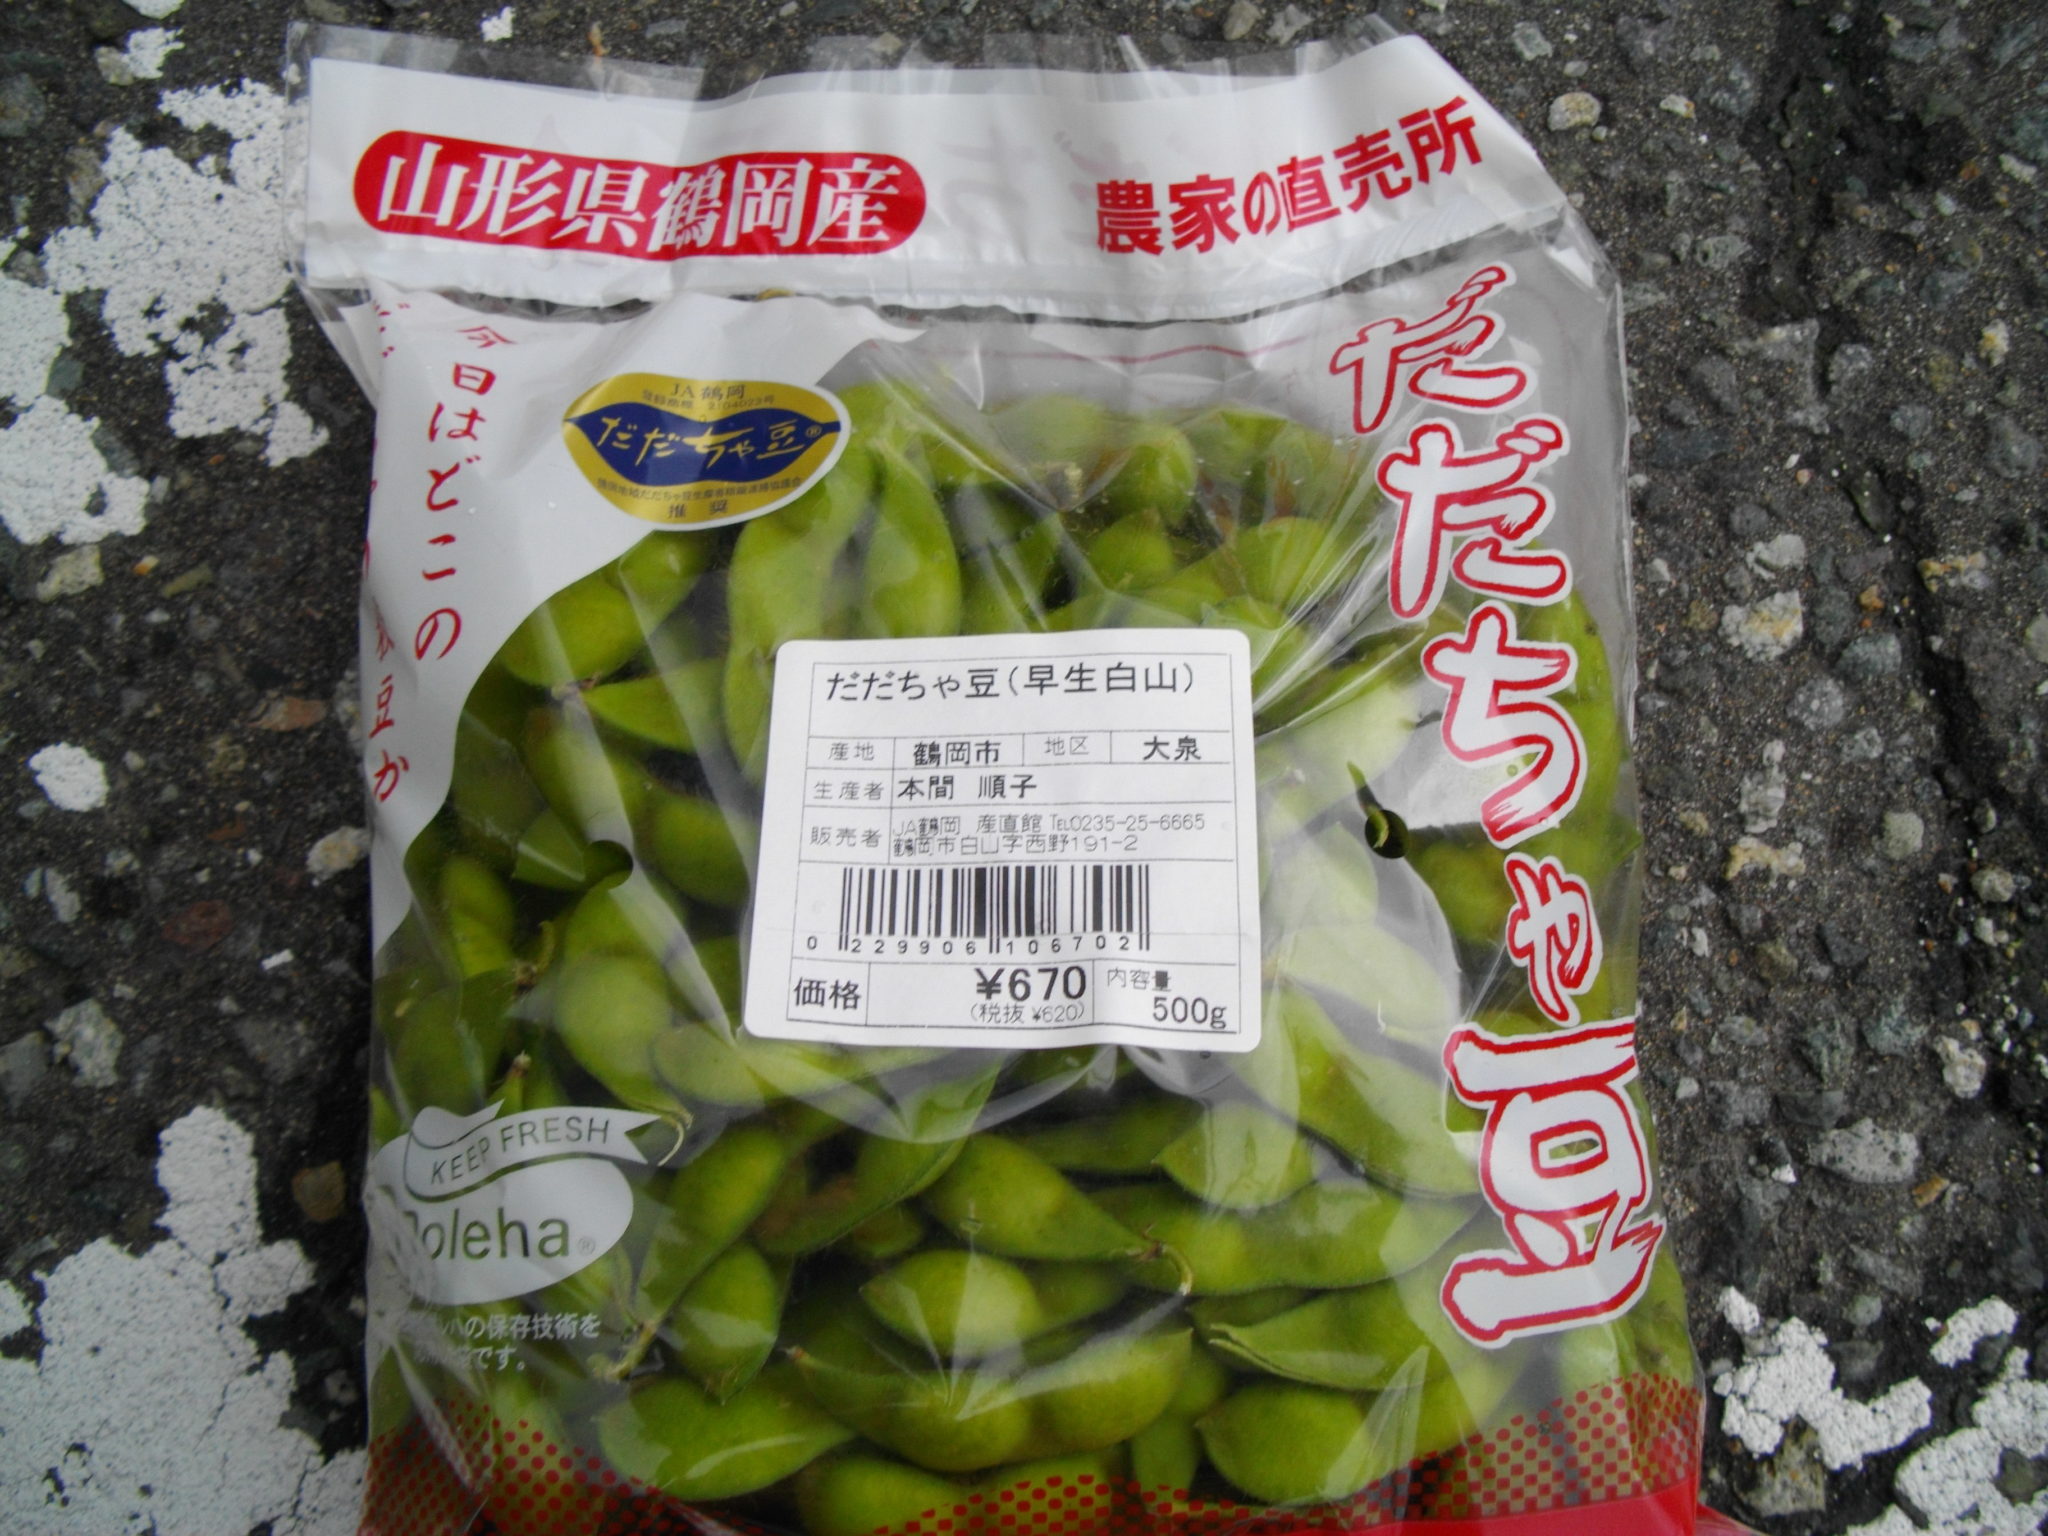 山形県鶴岡市特産のだだちゃ豆は中山美穂の一番搾りｃｍで全国区に